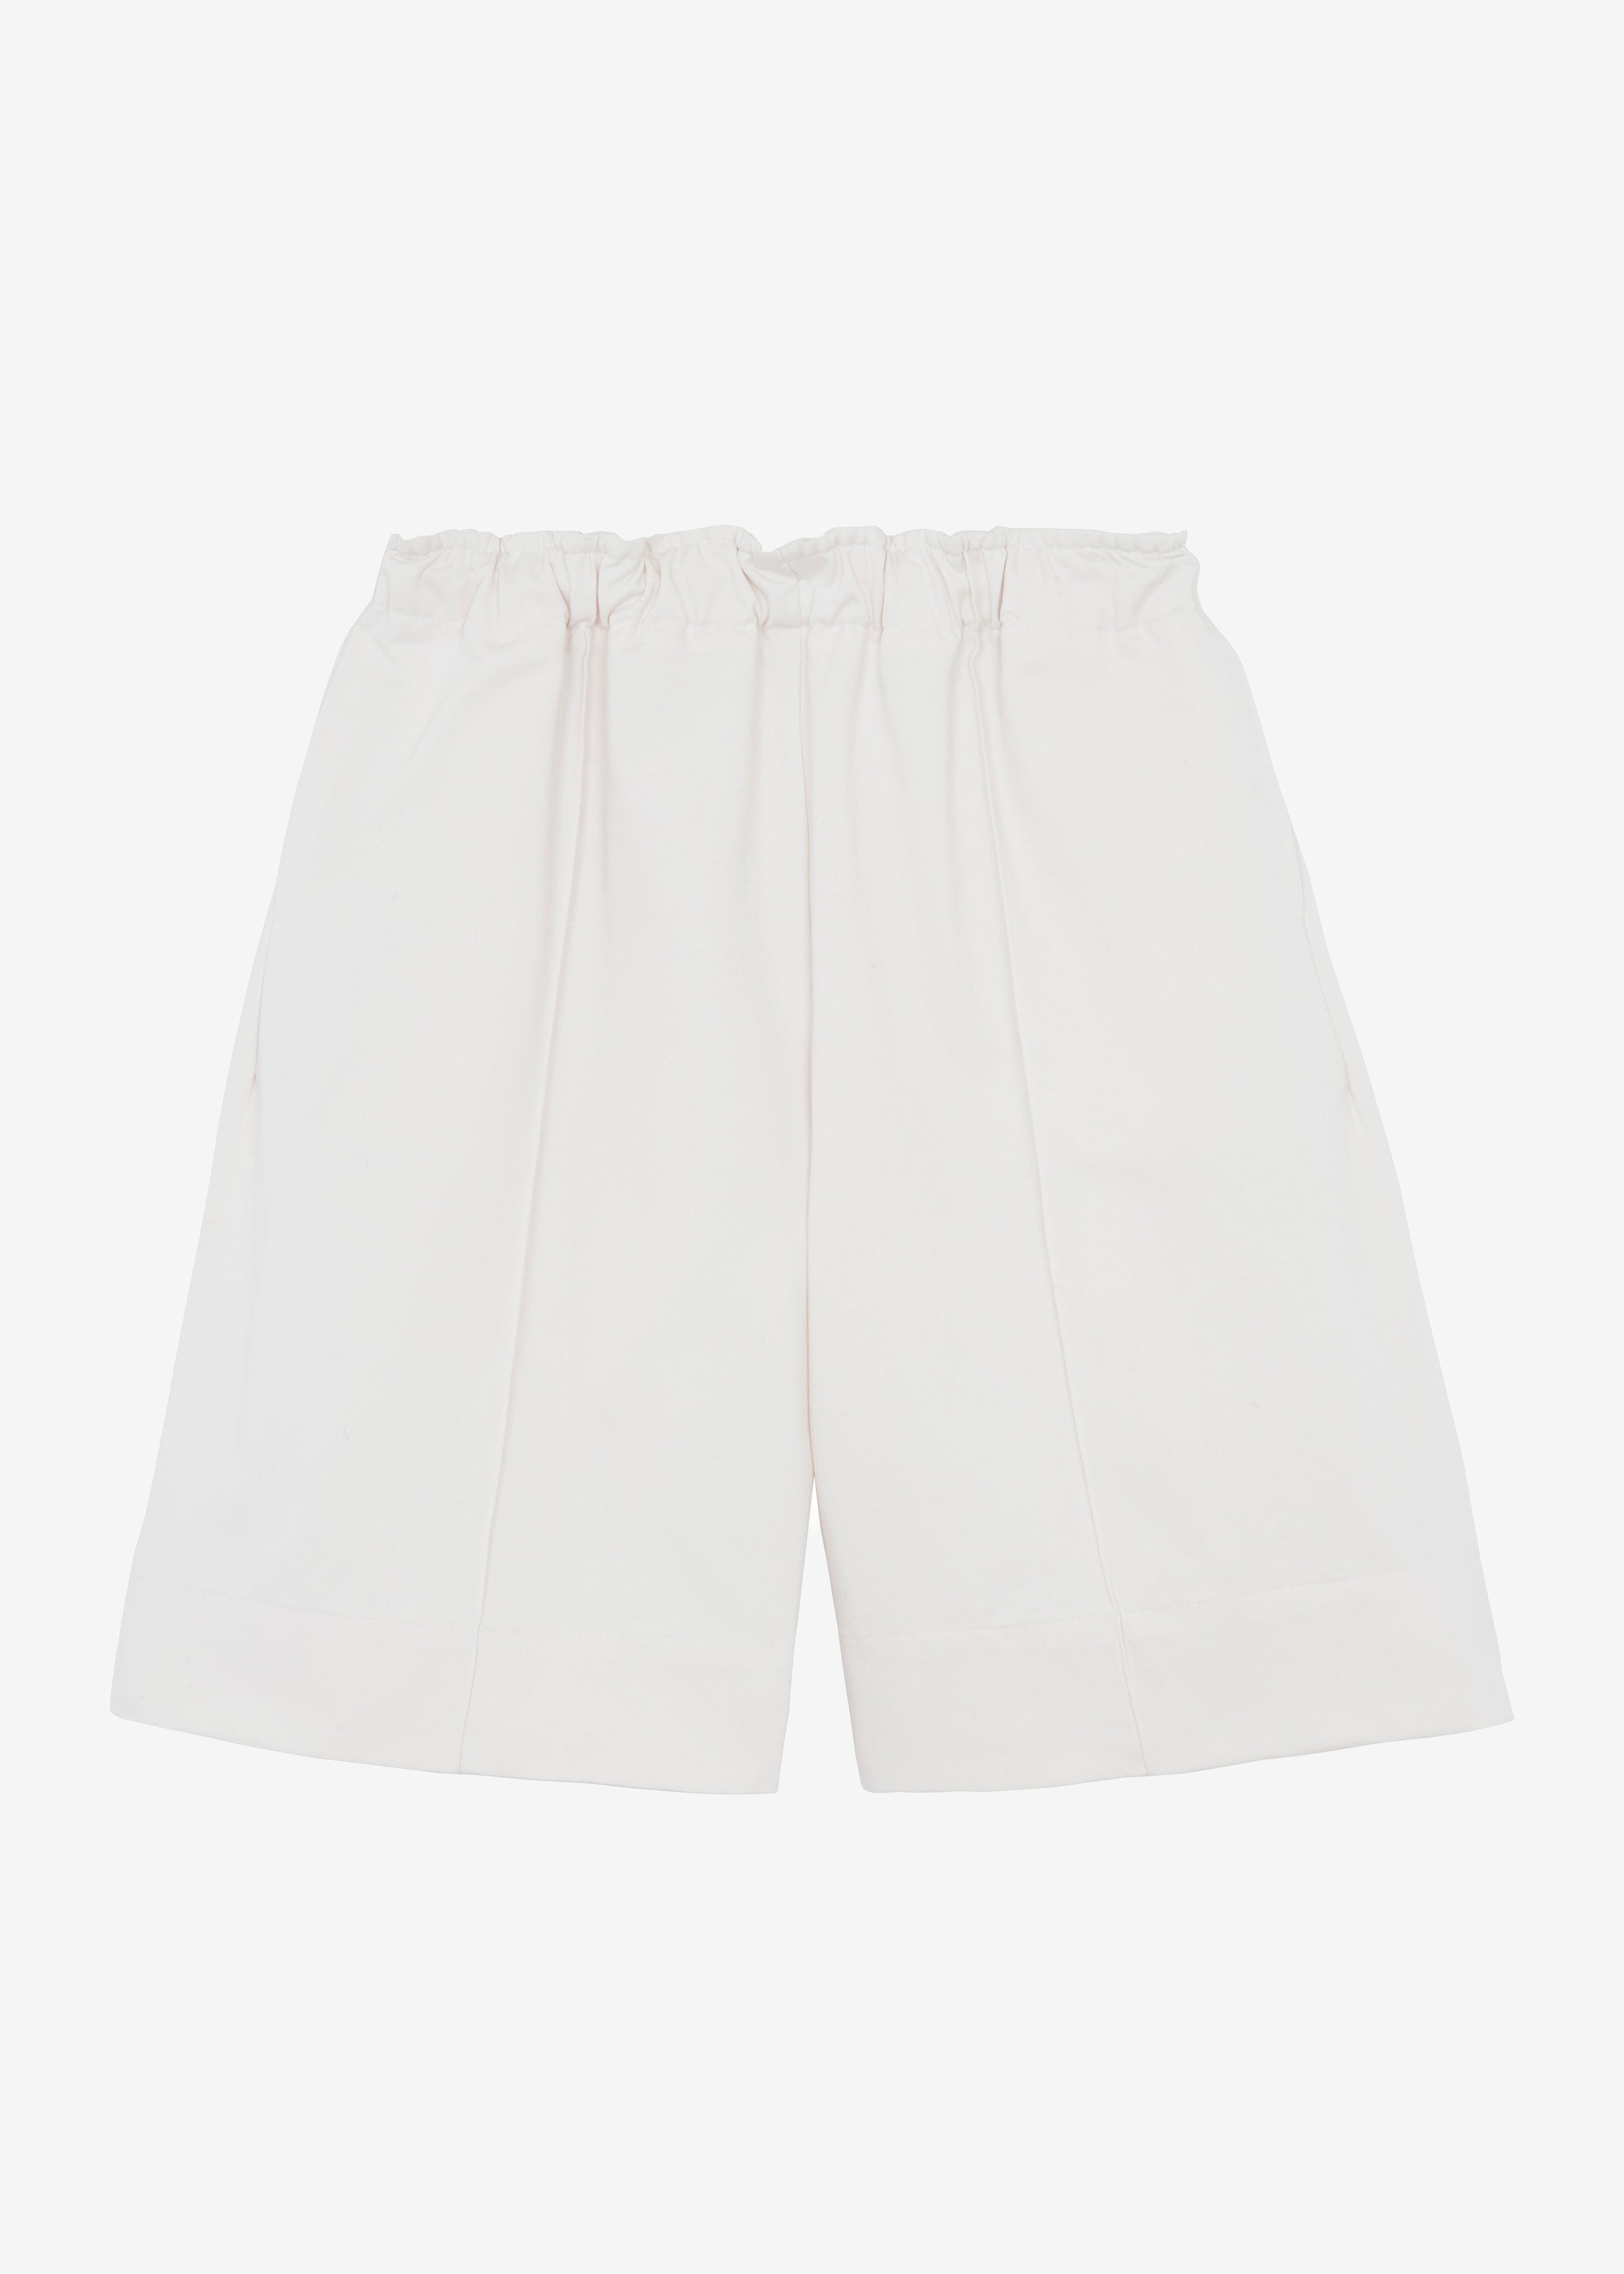 Adan Bermuda Shorts - Cream - 12